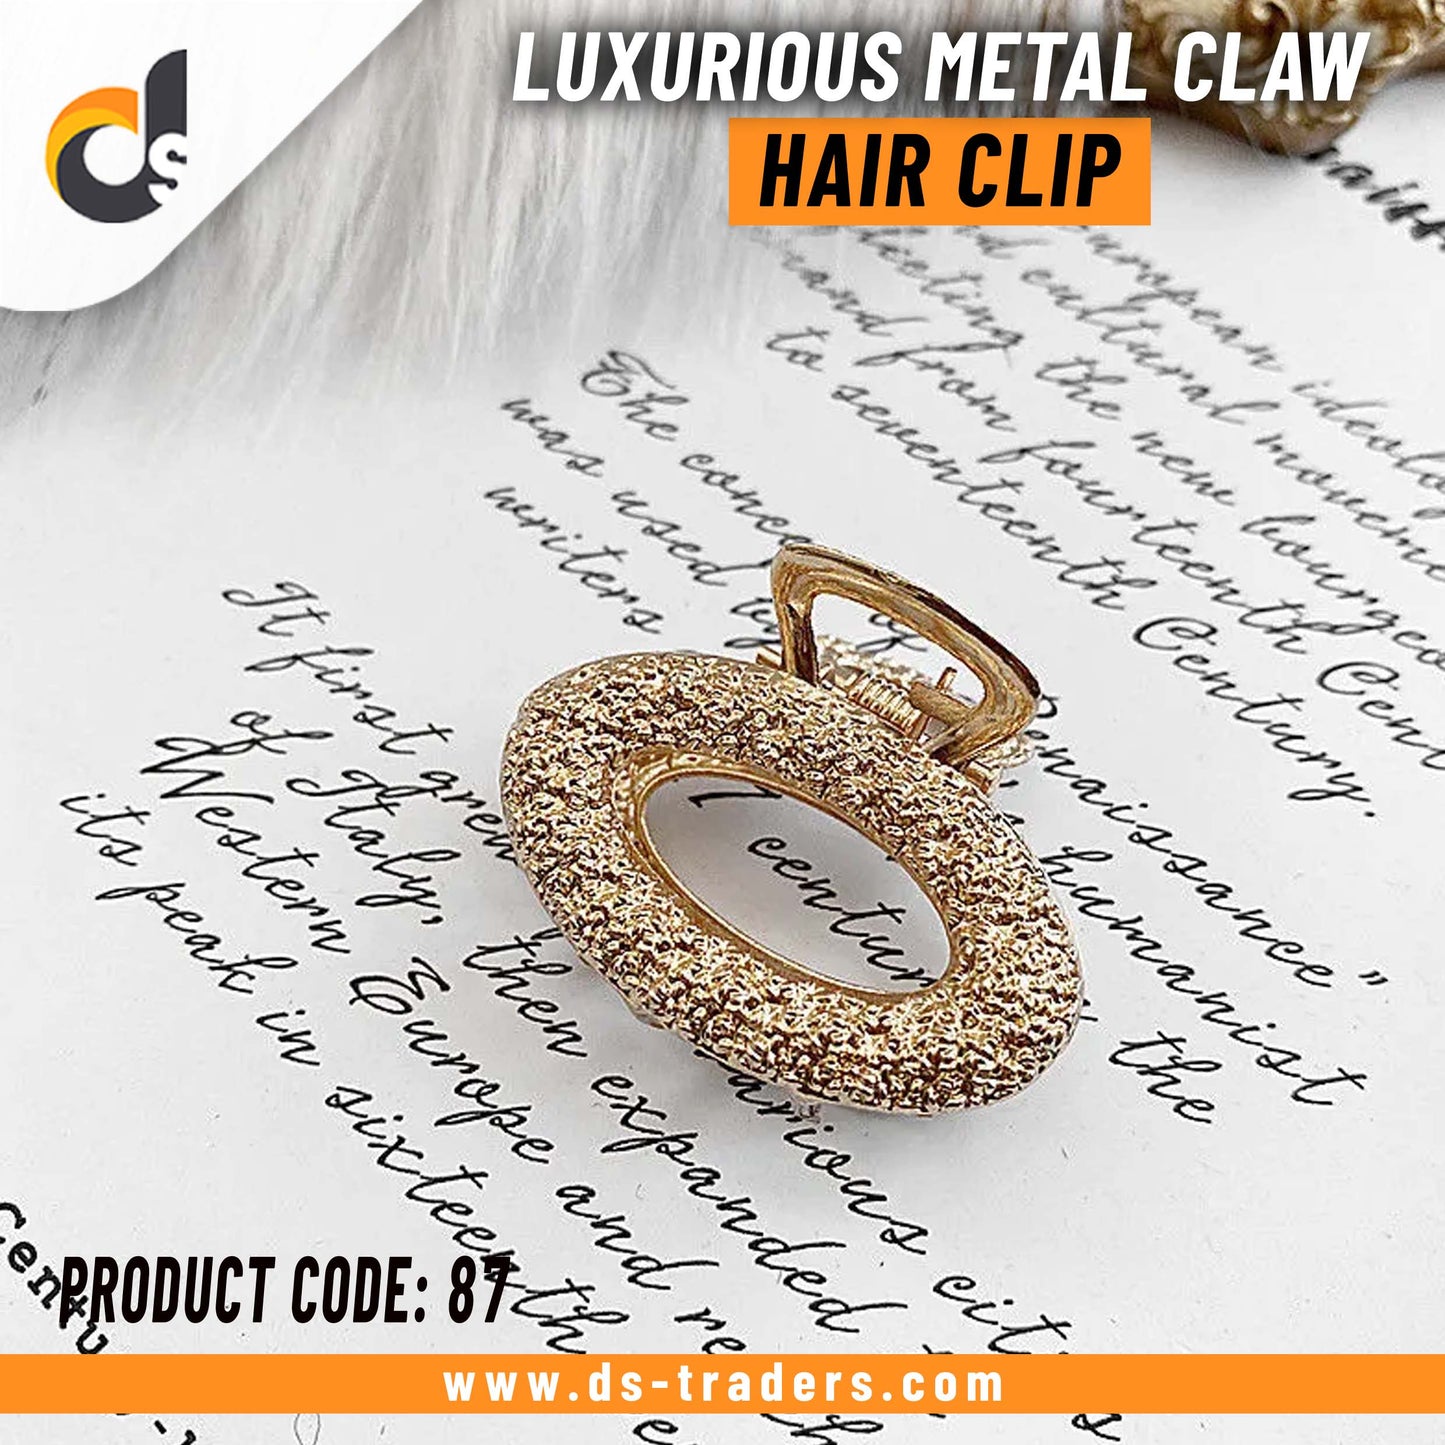 Luxurious Metal Claw Hair Clip